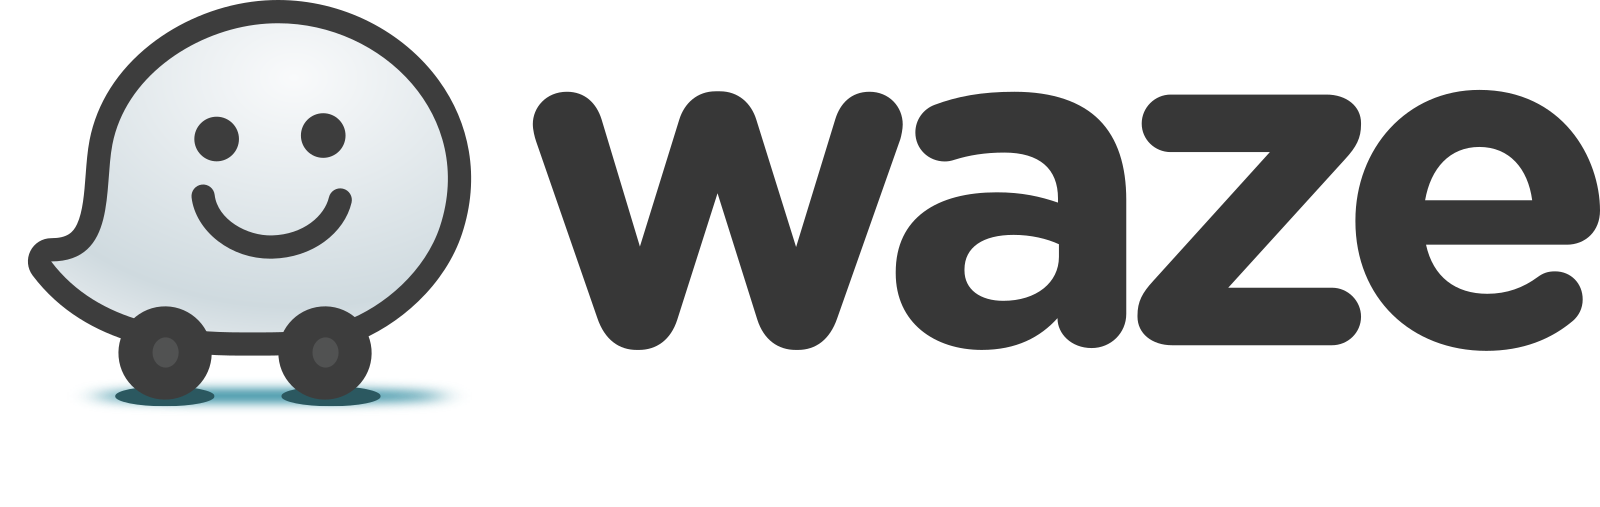 waze logo 2 - Waze Logo